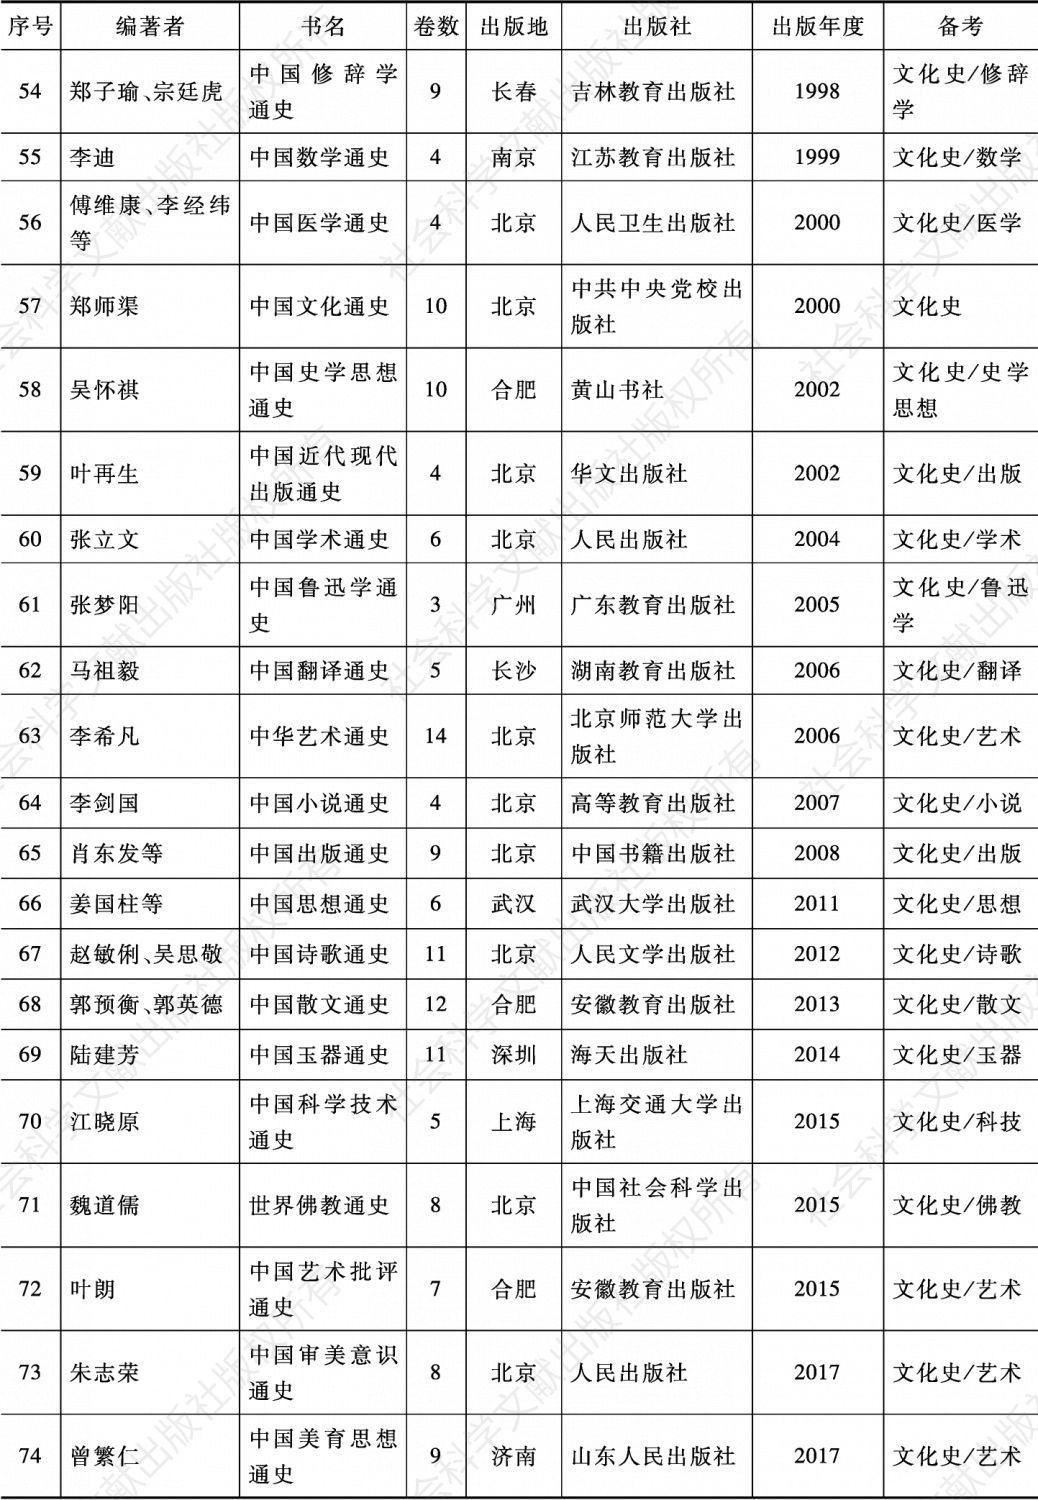 附表 改革开放时期（1980～2017）中国的大规模通史出版情况-续表3